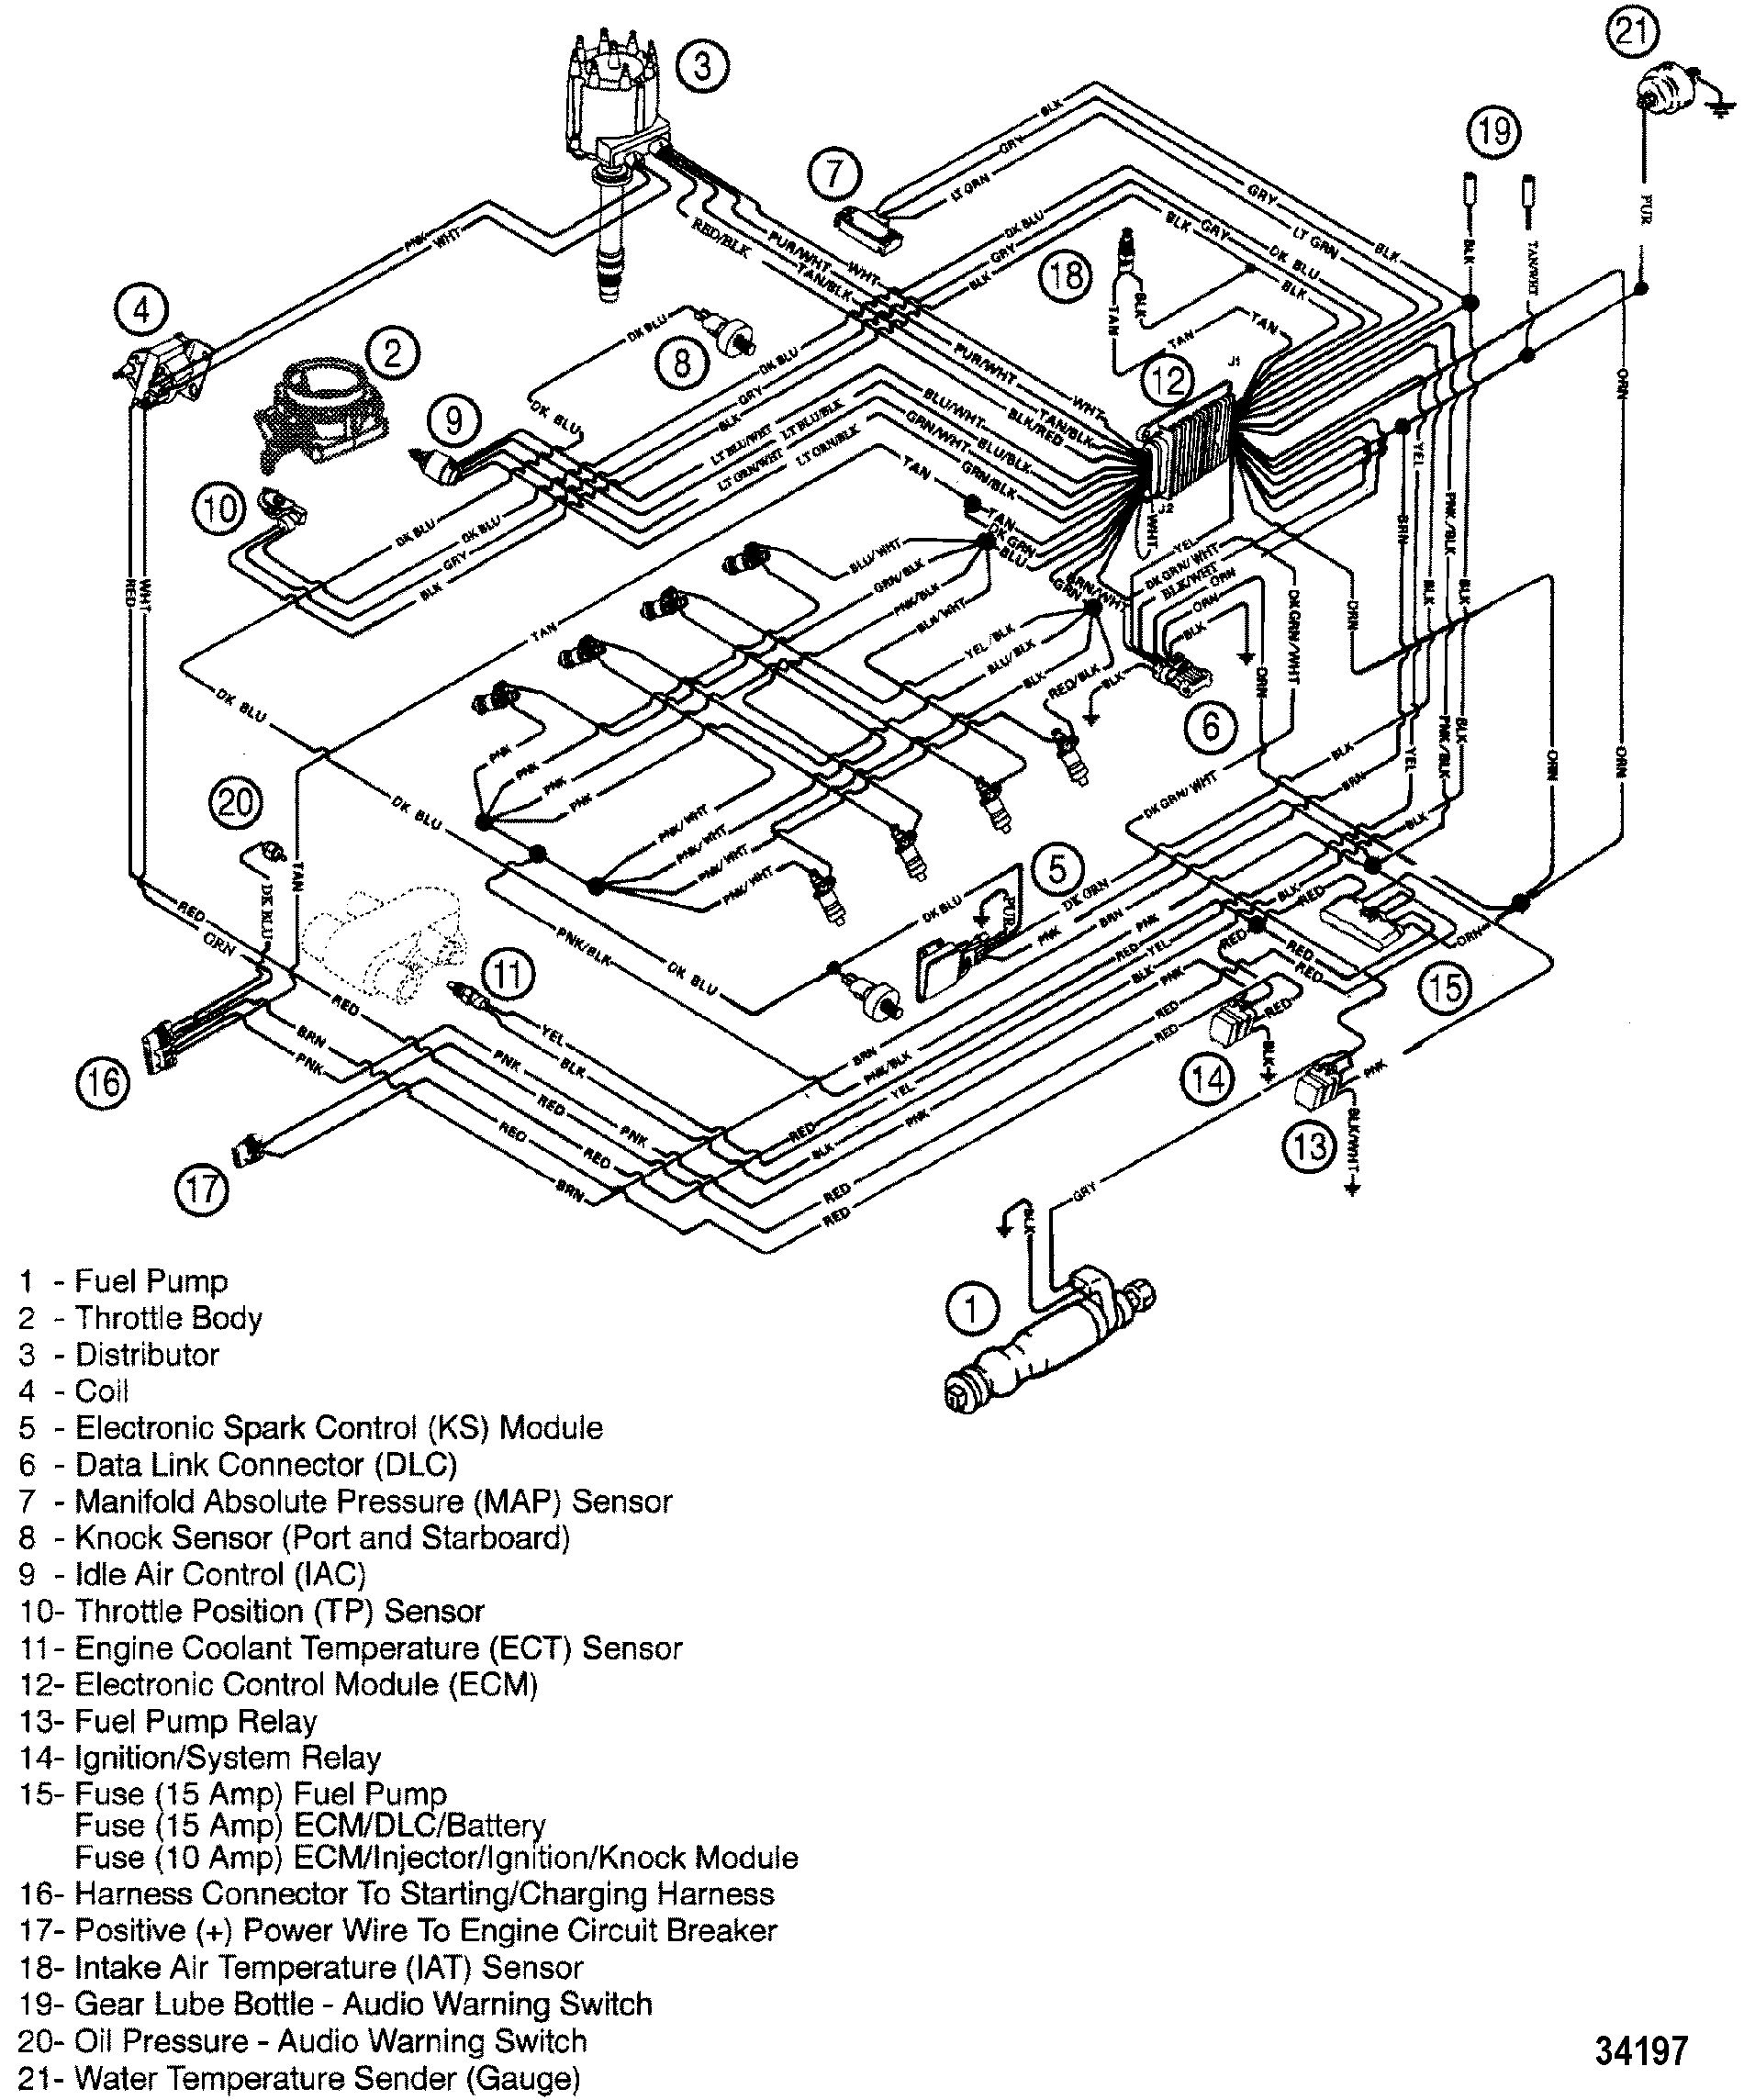 mercruiser 5.0 starter wiring diagram